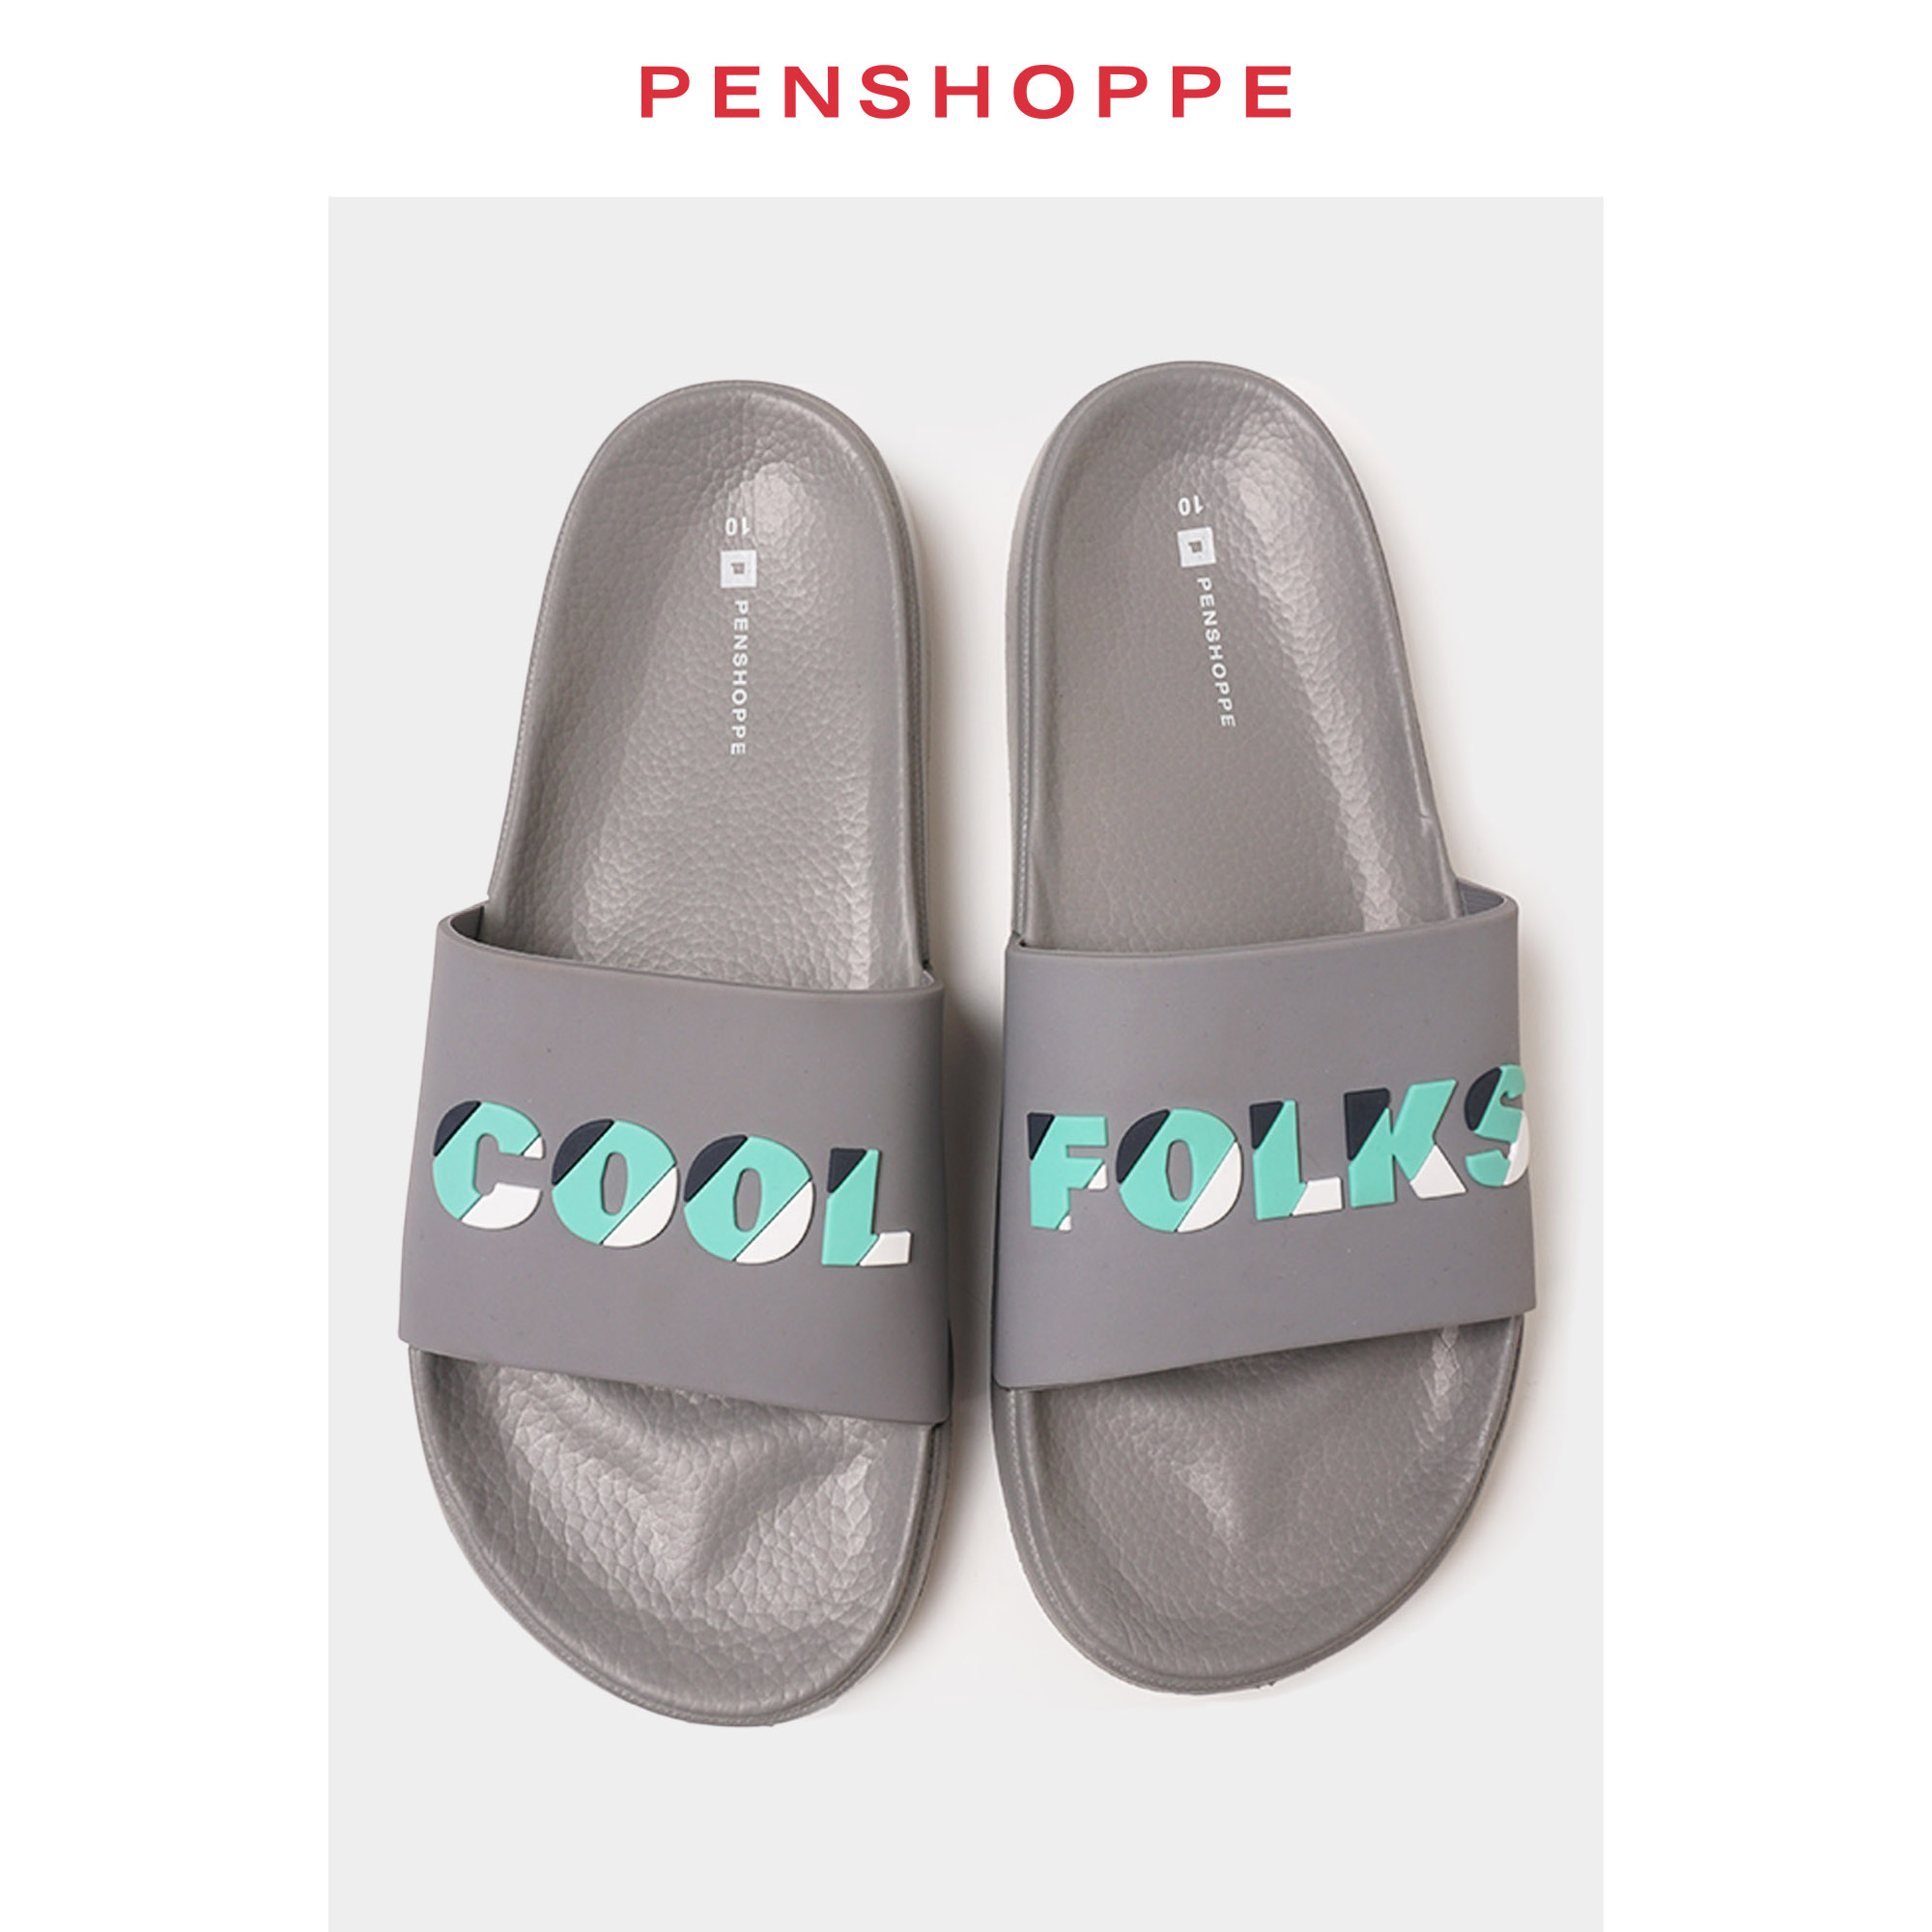 penshoppe slippers 219